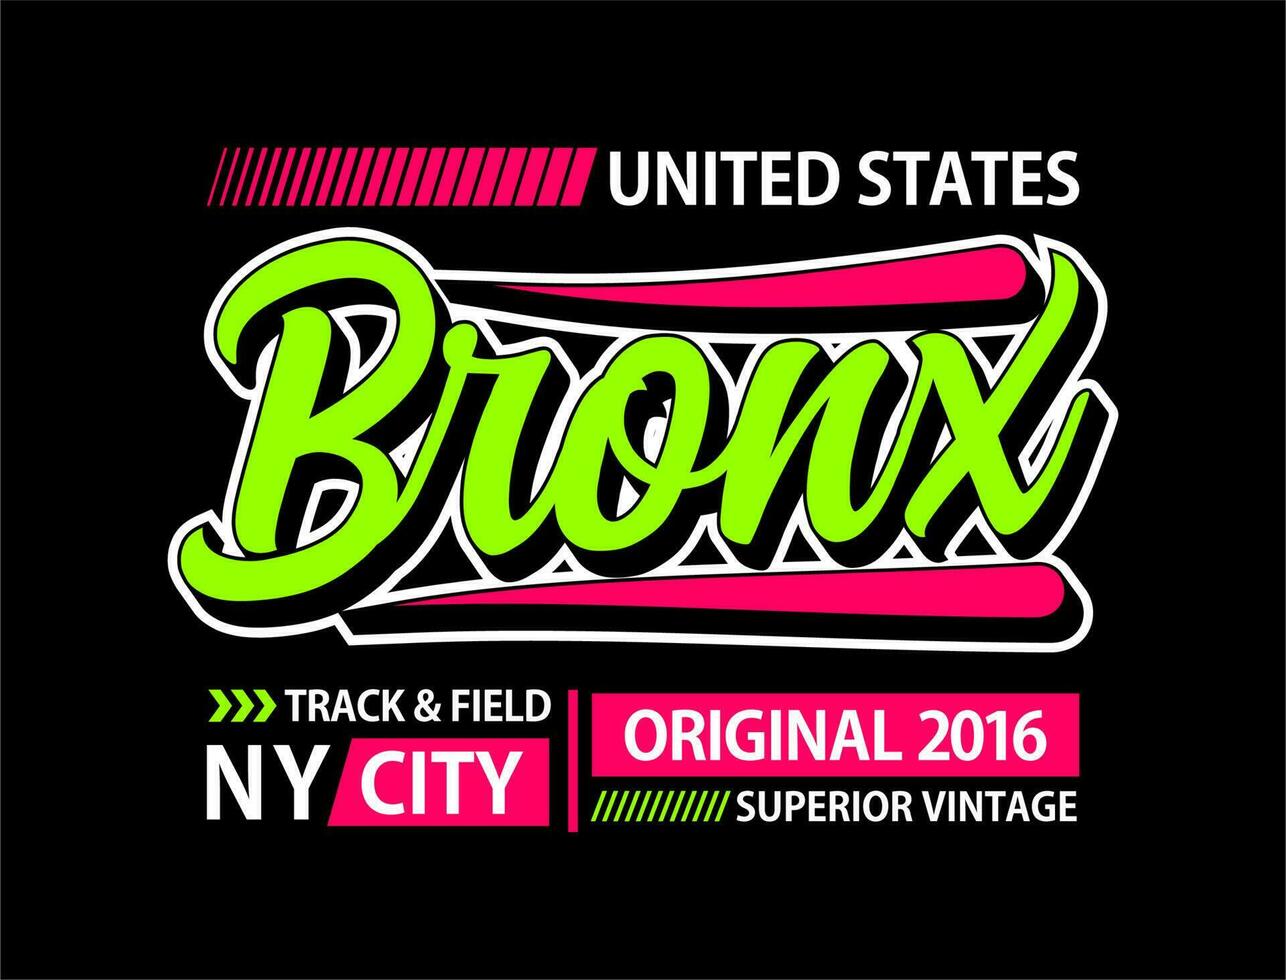 Bronx tipografia disegno, per maglietta, manifesti, etichette, eccetera. vettore